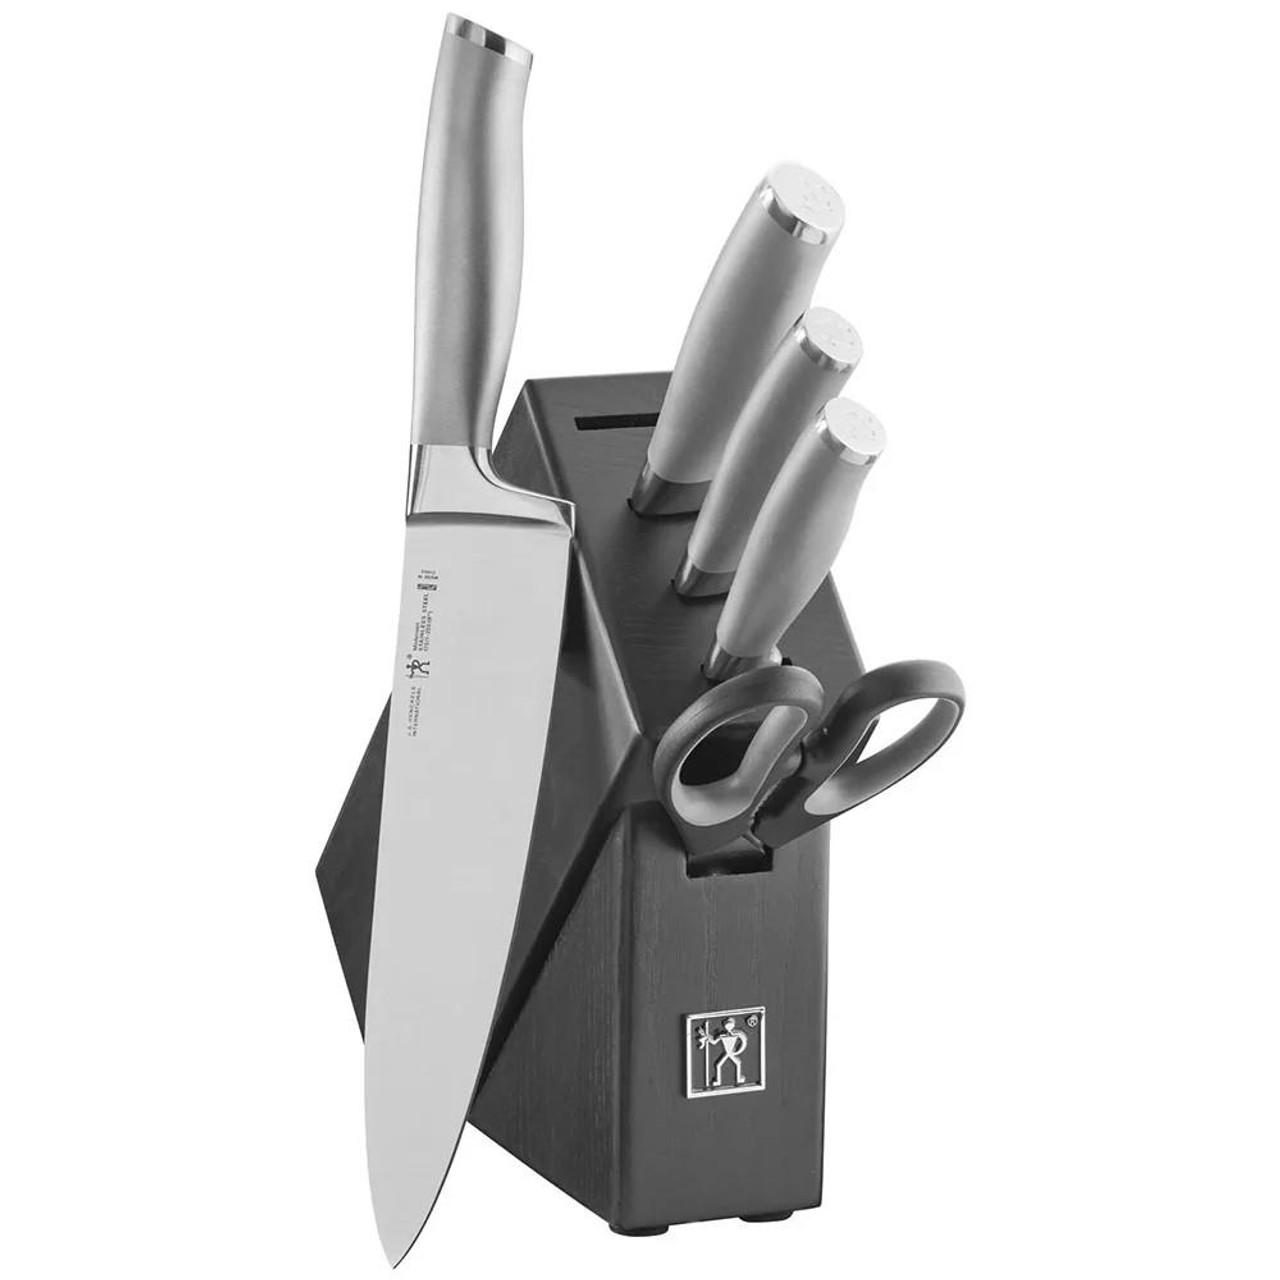  Henckels Paring Knife Modernist 6 Piece Knife Set with Black Hardwood Block 